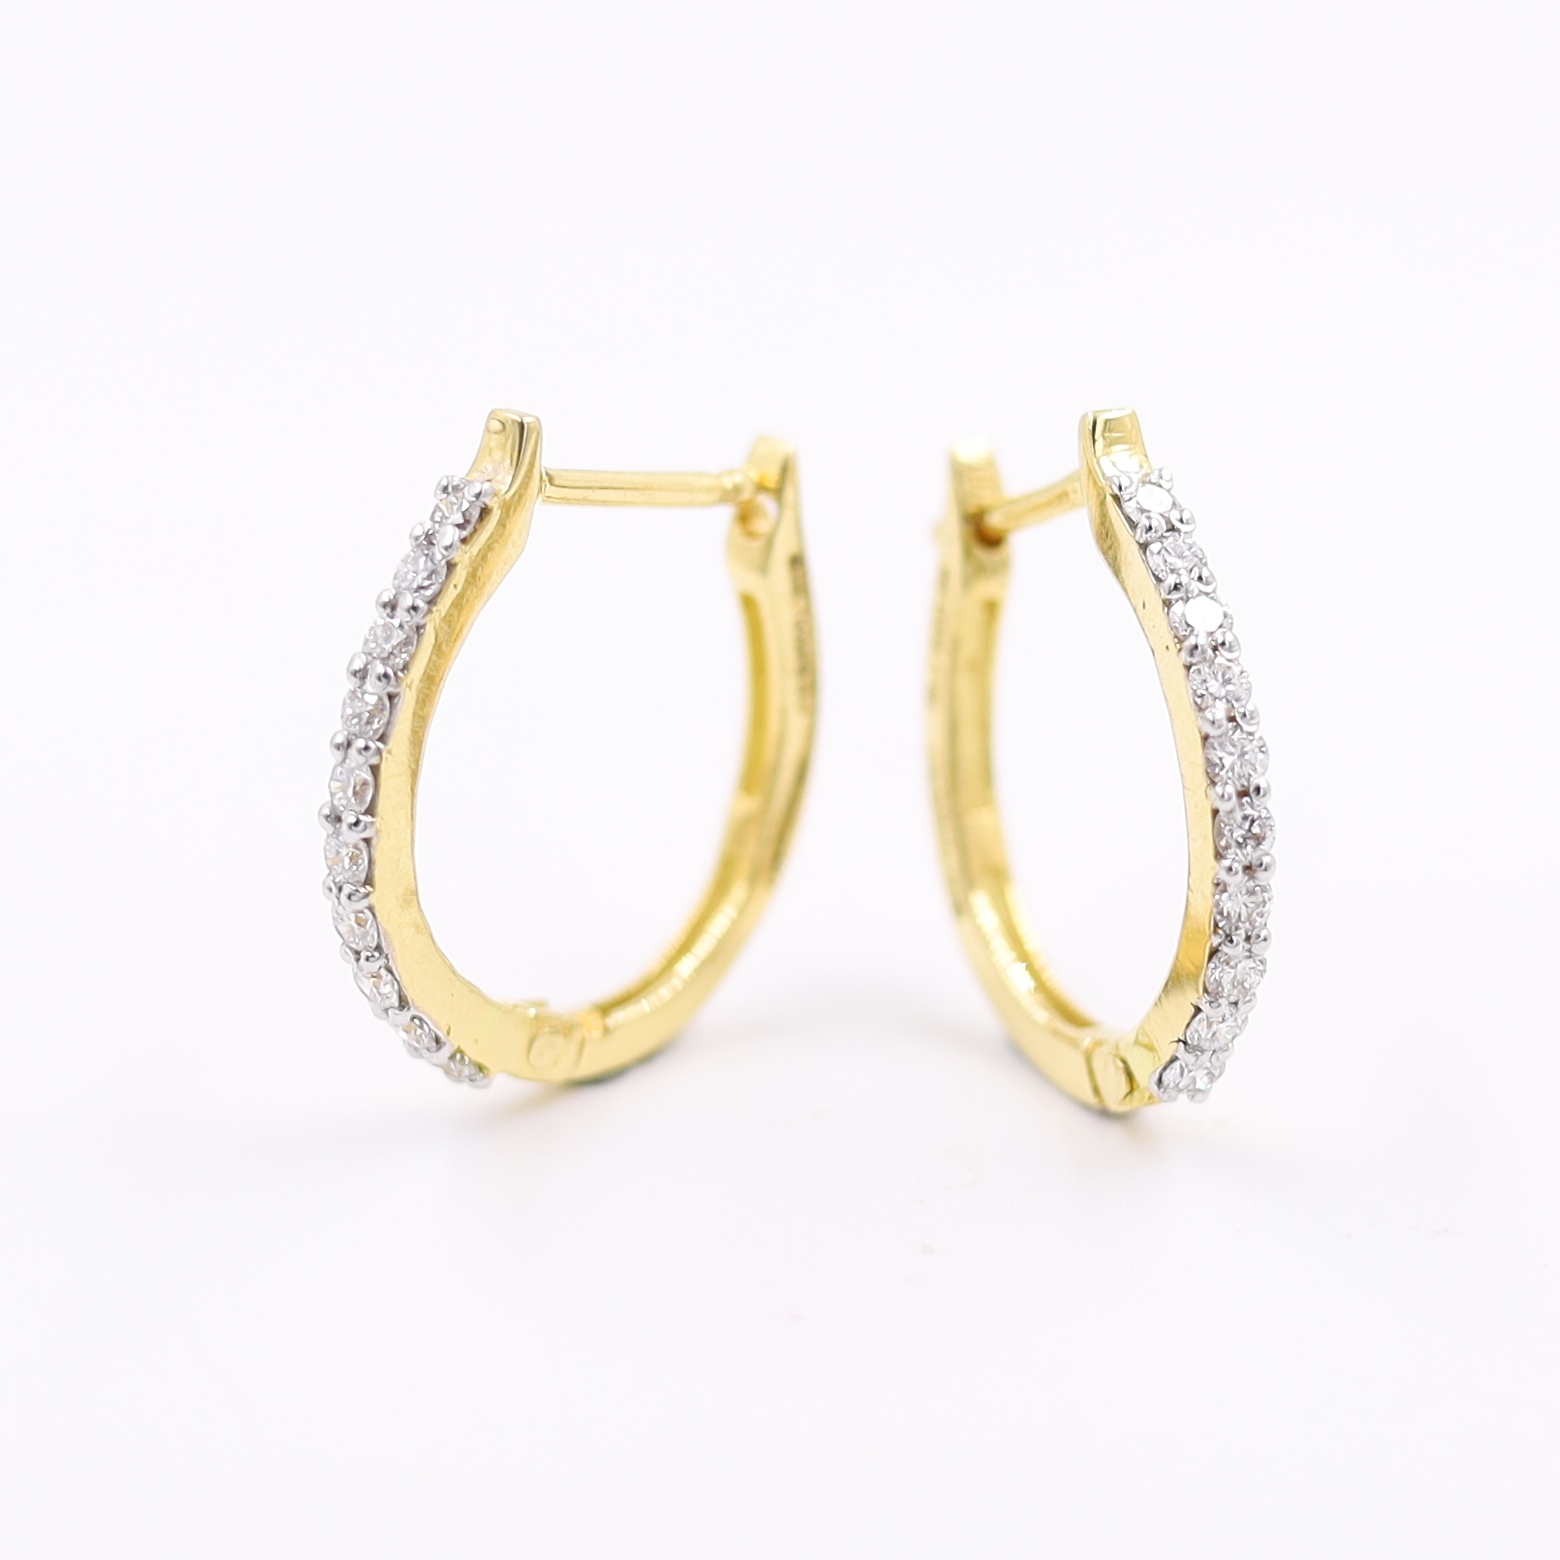 Contemporary 18KT Single Line Diamond Hoop Earrings For Party Wear